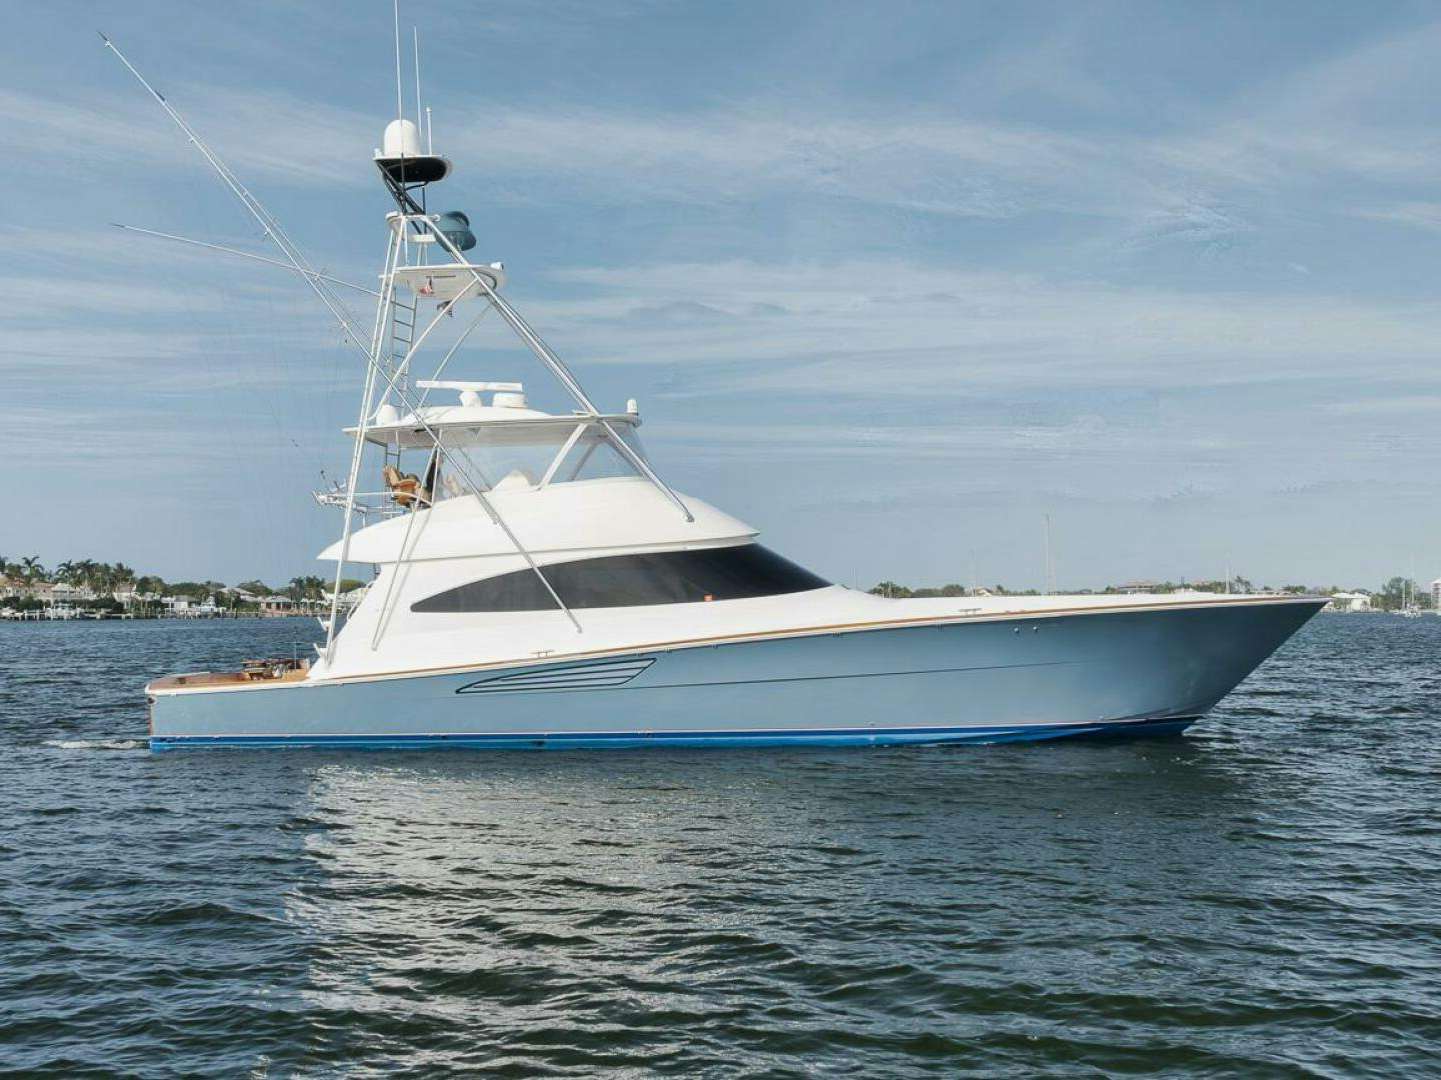 Jo-li
Yacht for Sale